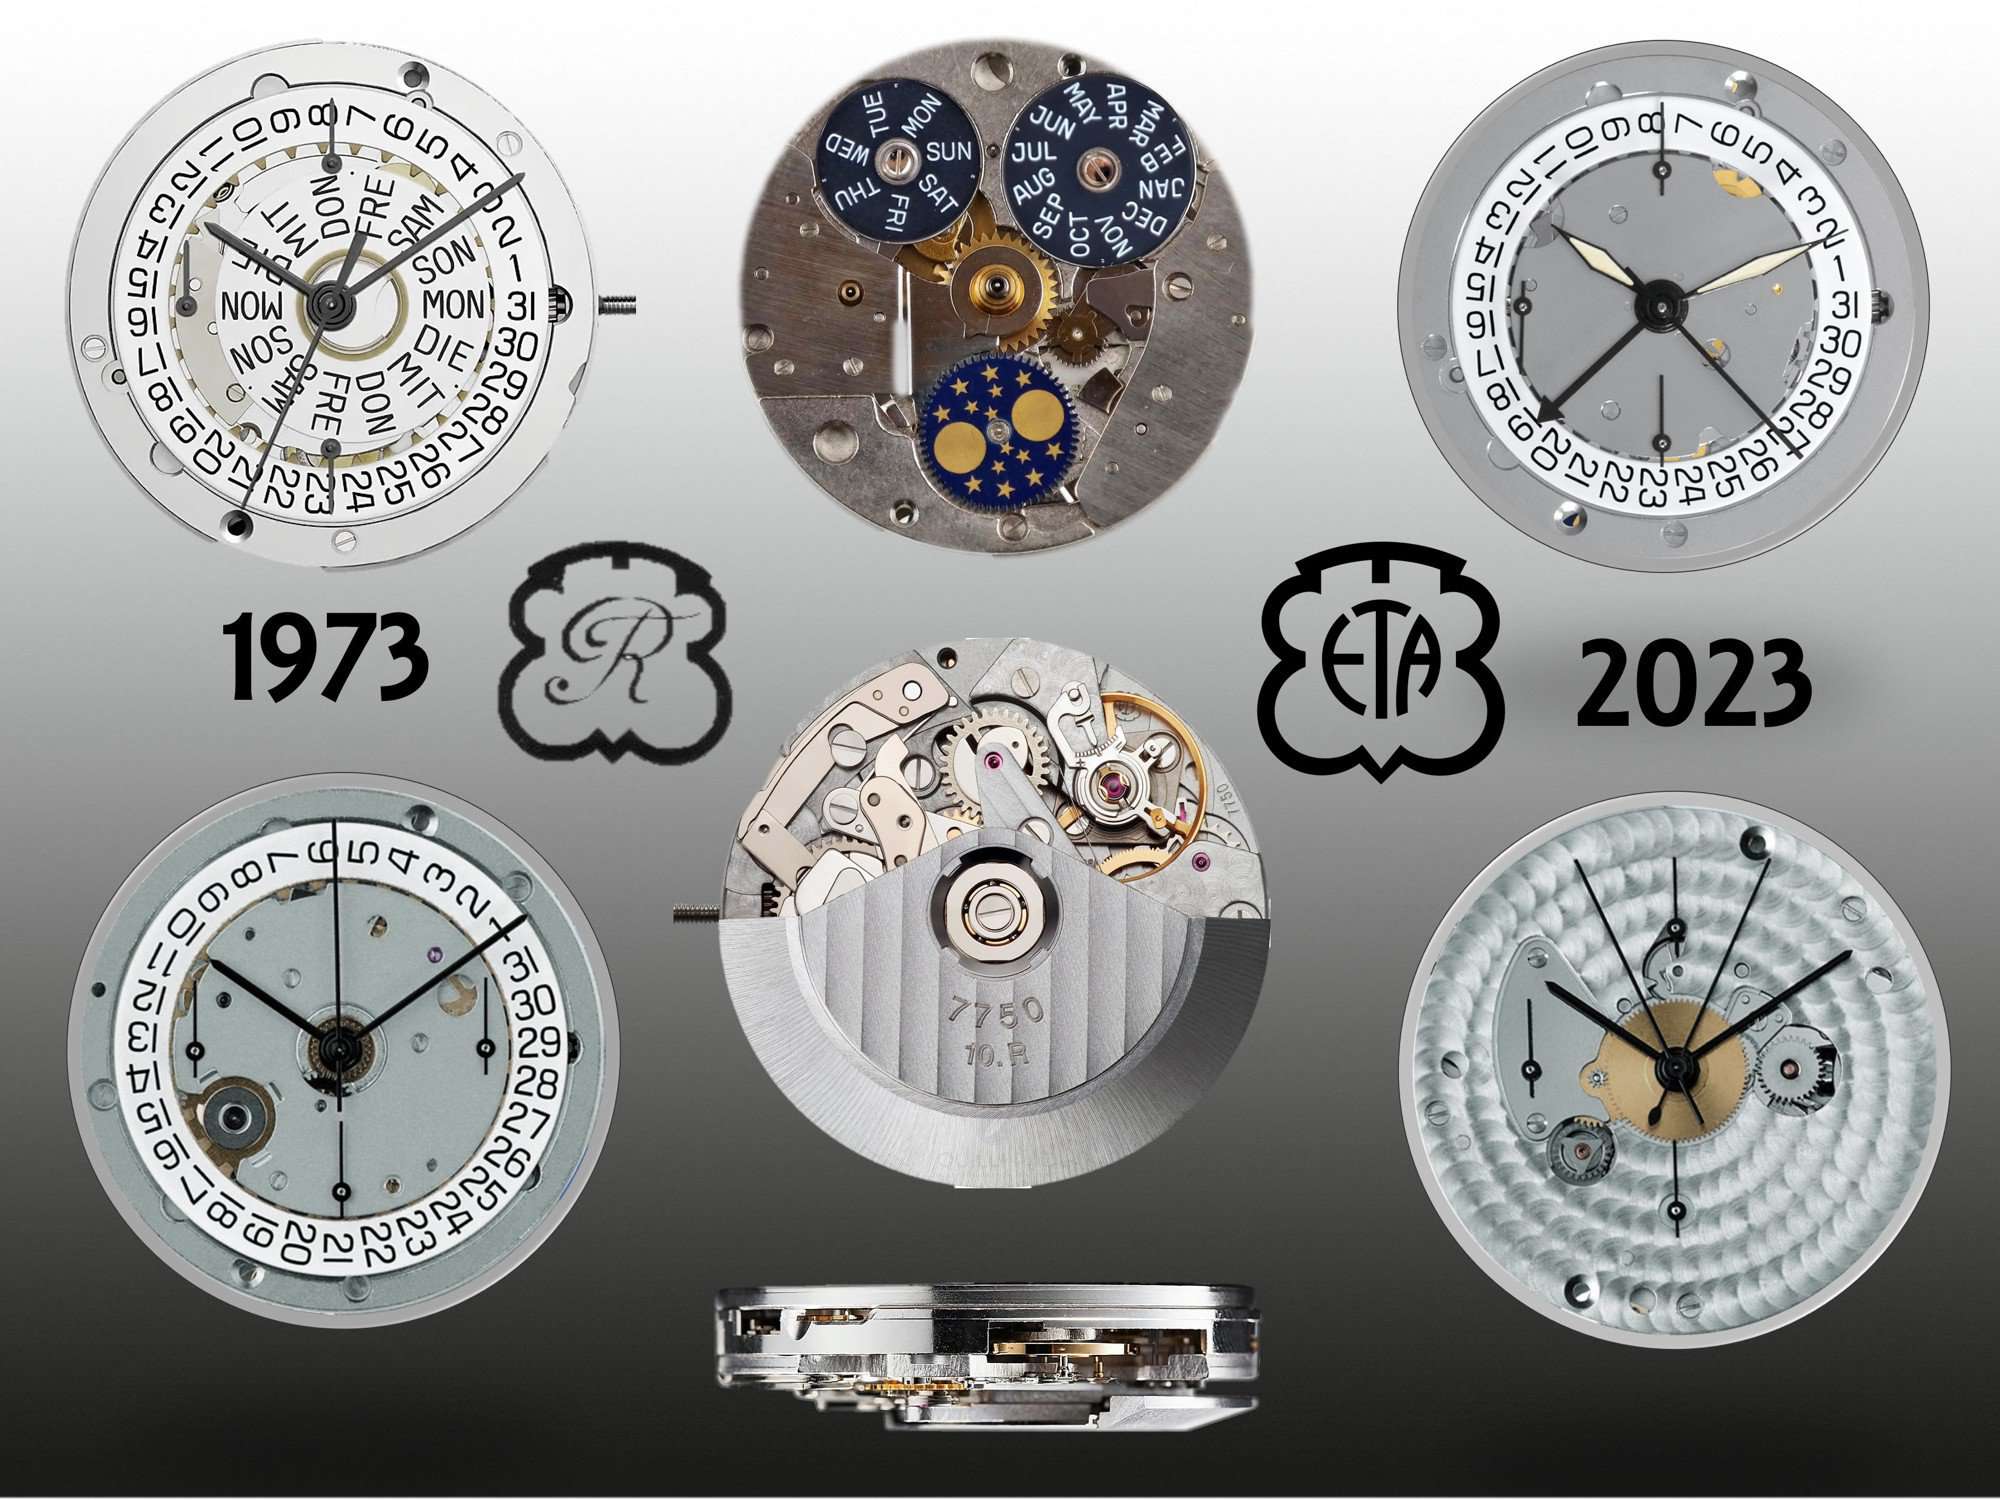 Das Chronographenkaliber Valjoux 7750 und seine Derivate von 1973 bis 2023